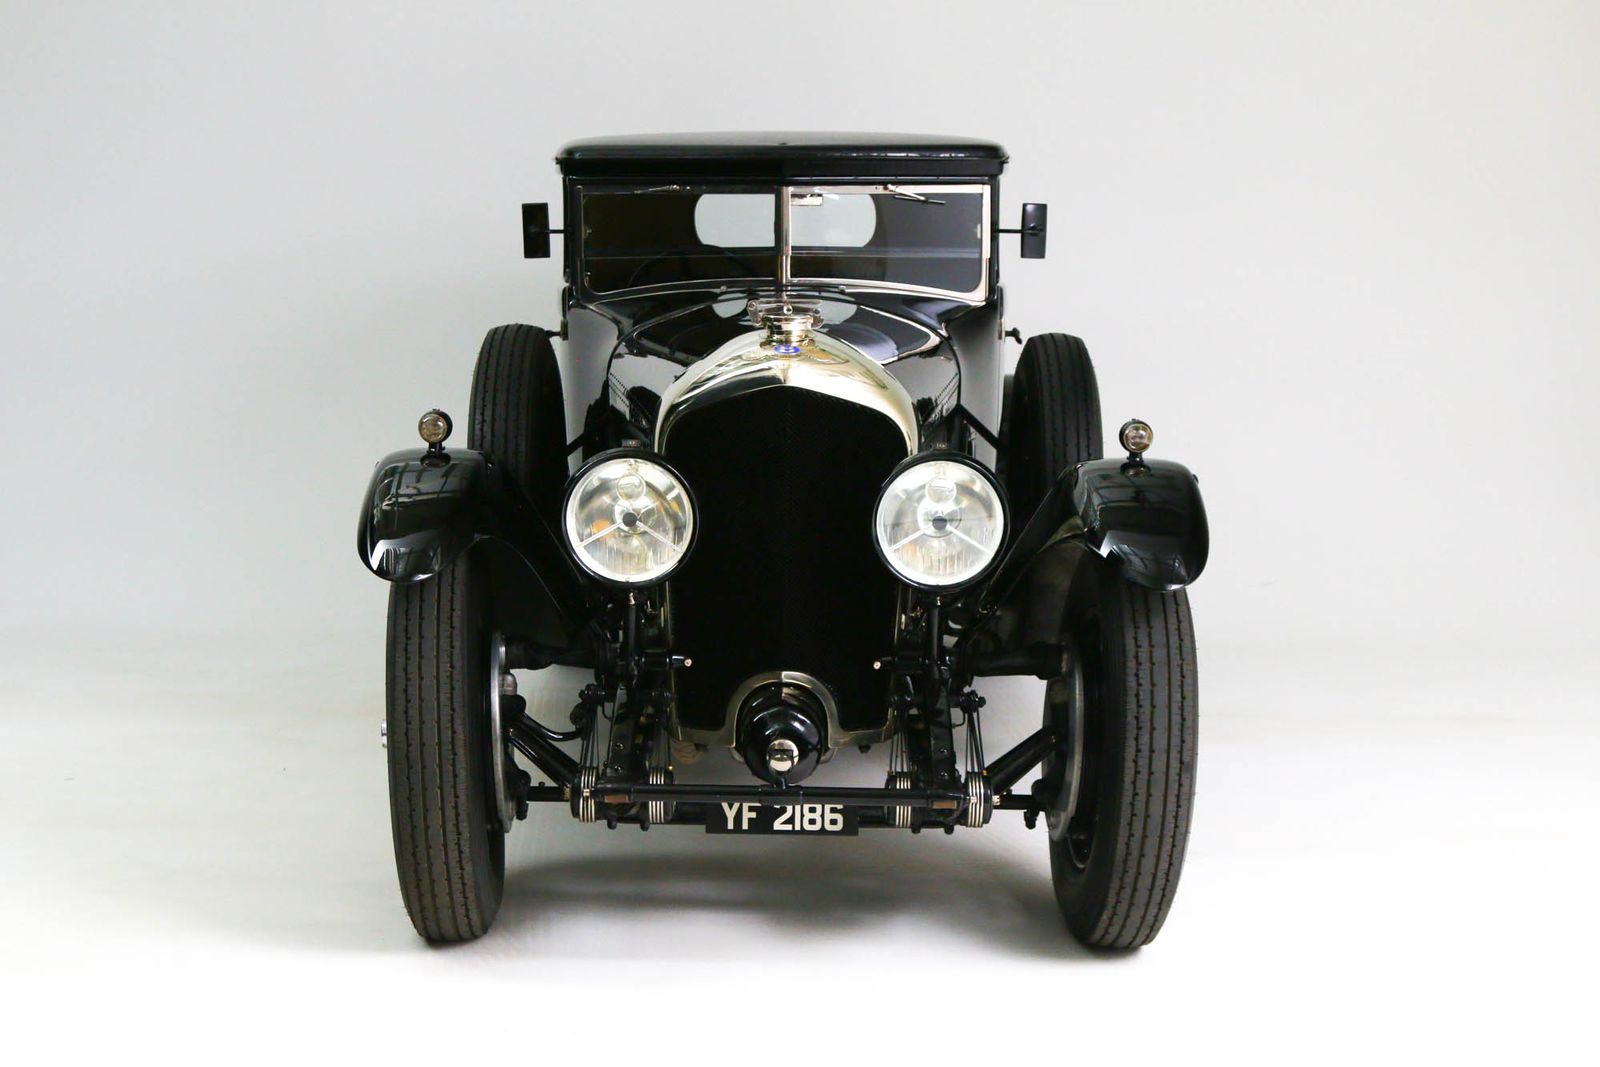 Bentley 1927 Modell: 6,5 Litre Bentley Harrison Bodied Bentley